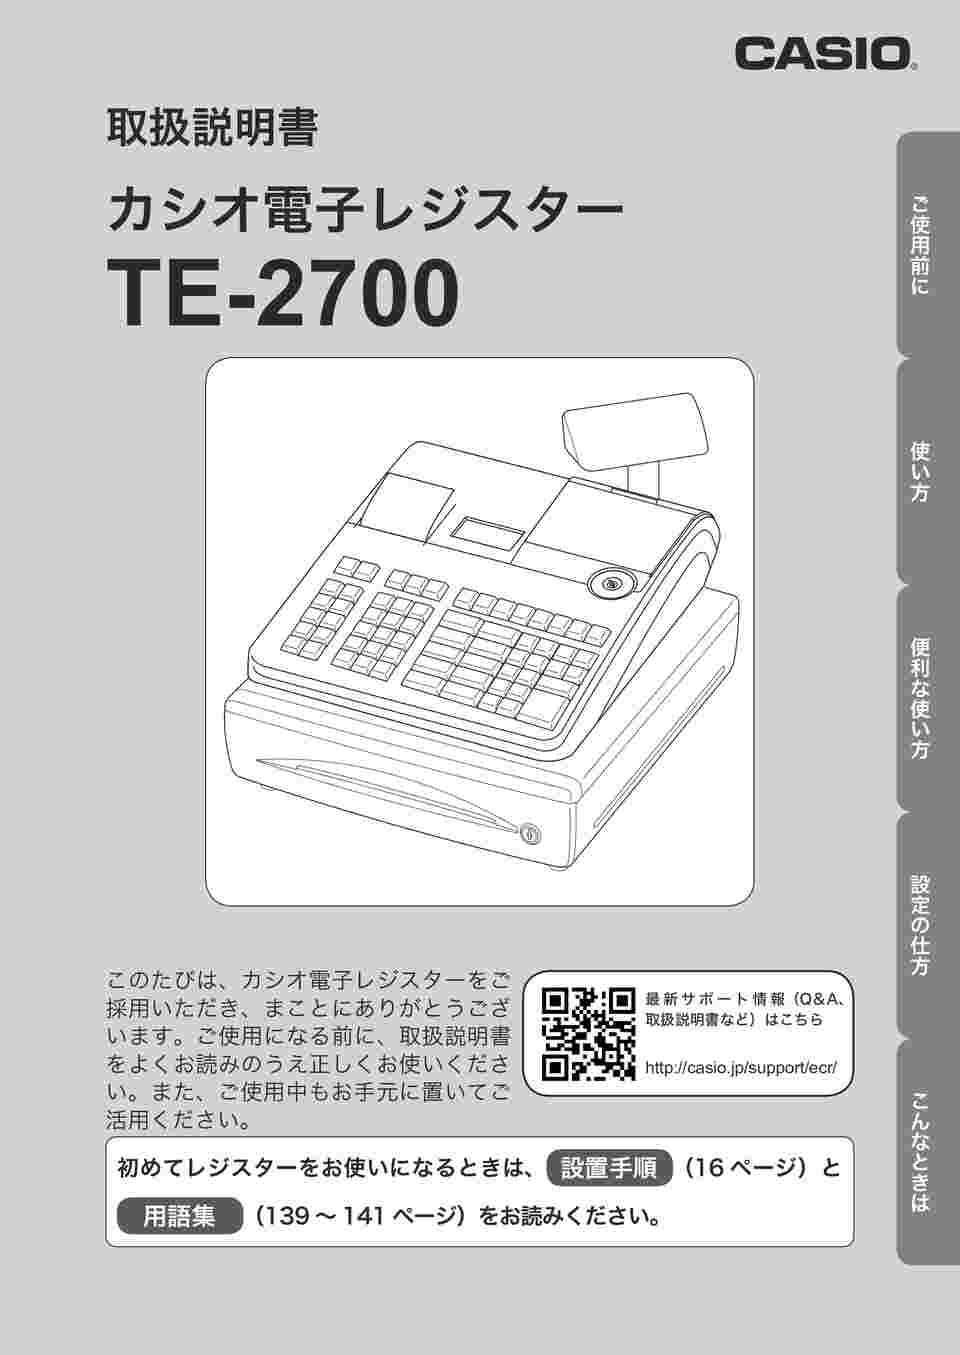 CASIO レジスター TE-2700 PC連携 売上管理 高性能 m5417 - 店舗用品